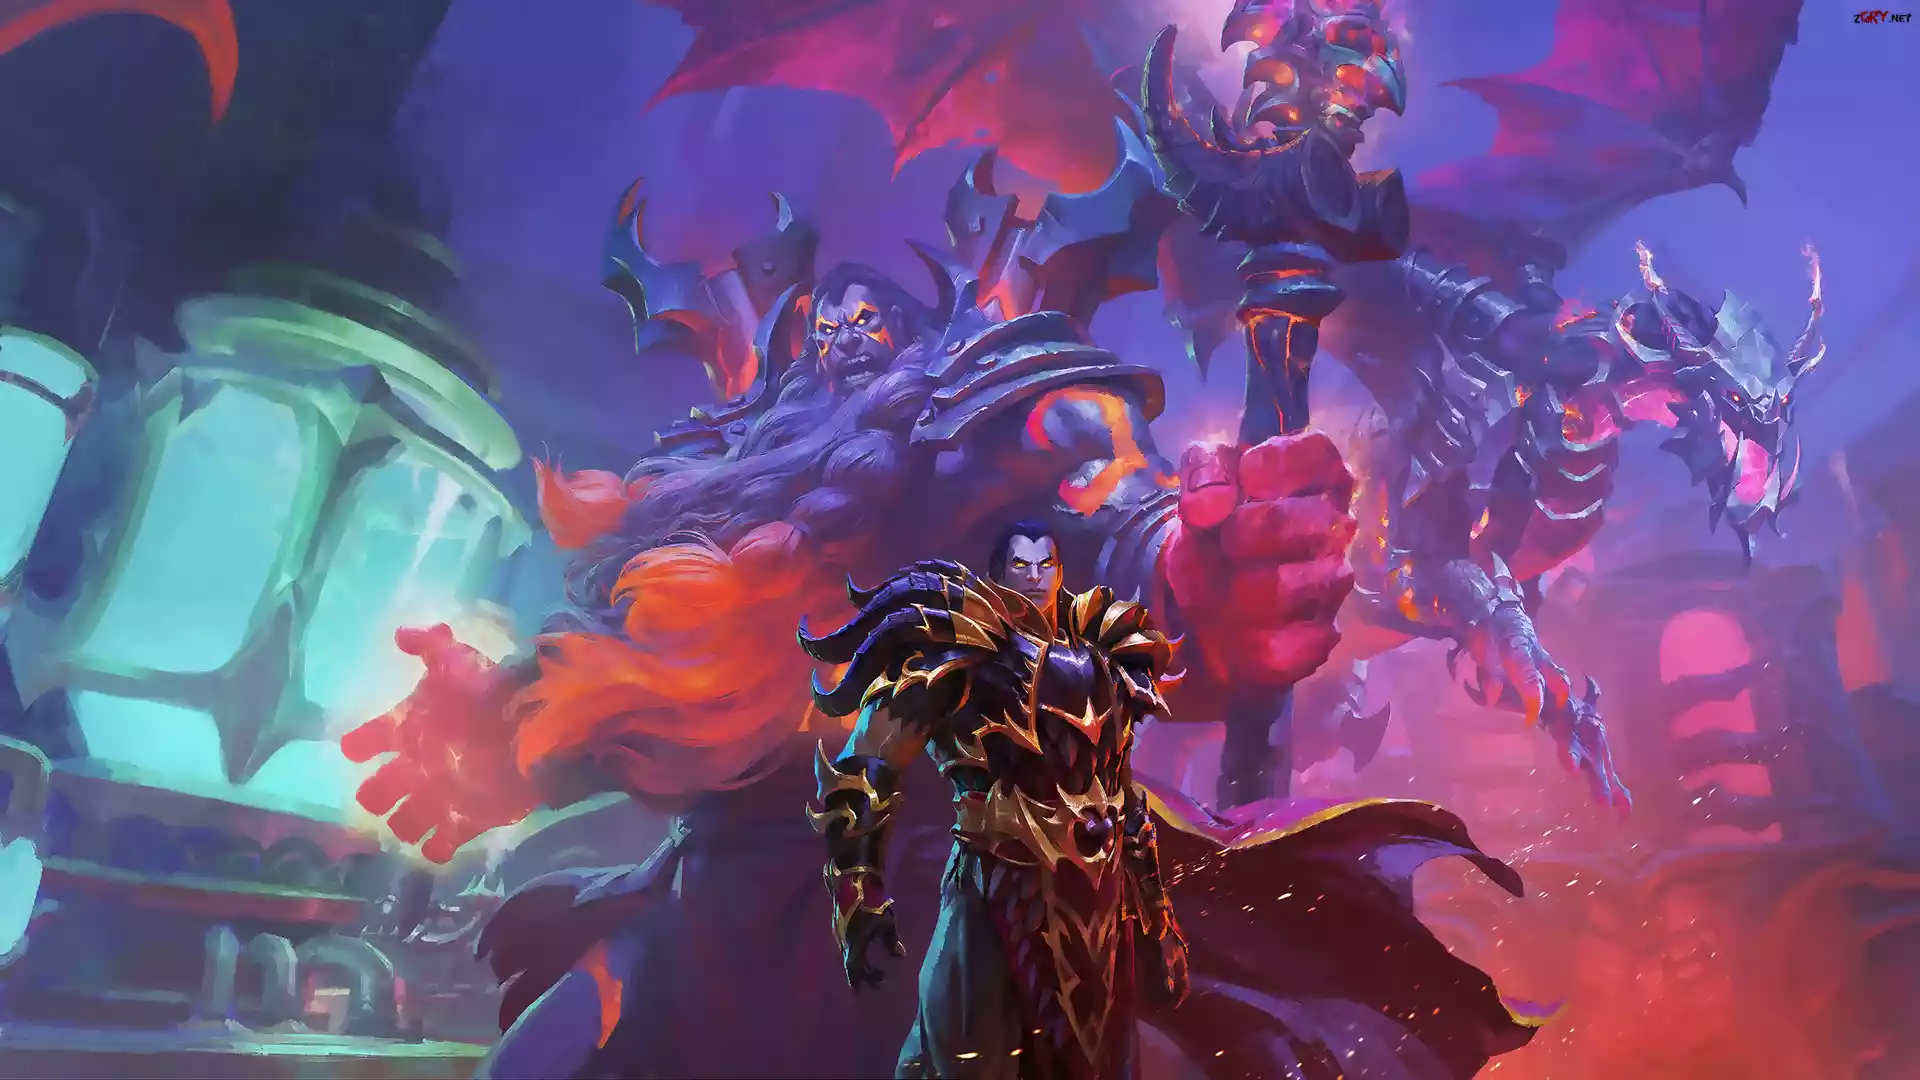 Gra, World of Warcraft Dragonflight, Postacie, Armor, Pancerze, Broń, Smok